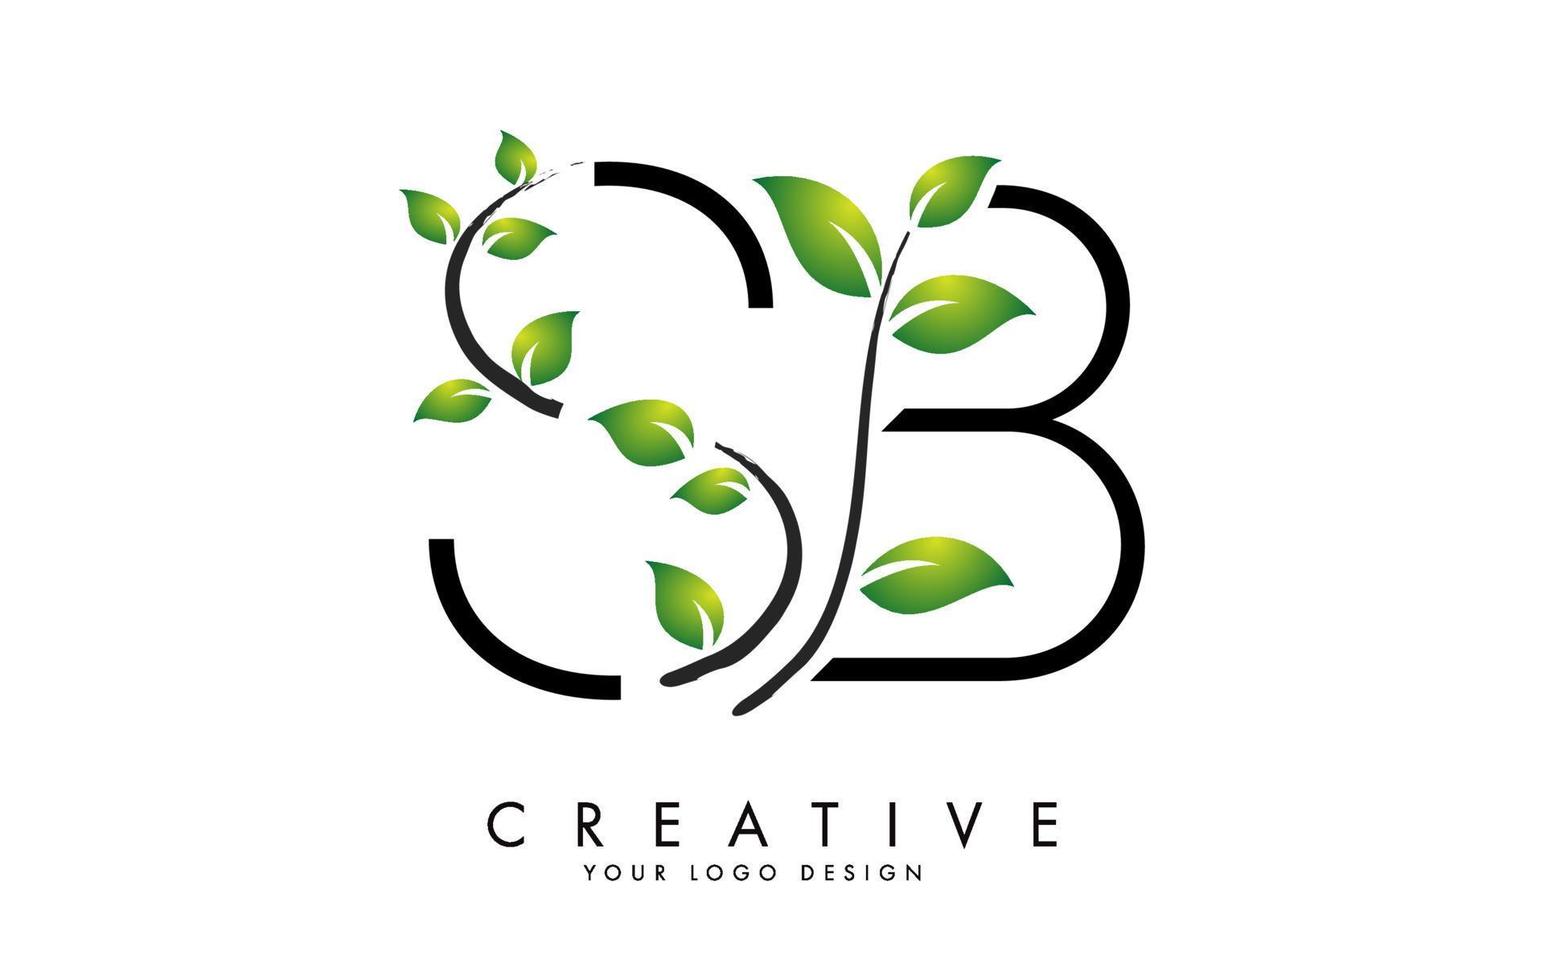 blad letters sb sb logo ontwerp met groene bladeren op een tak. brieven sb sb met natuurconcept. vector